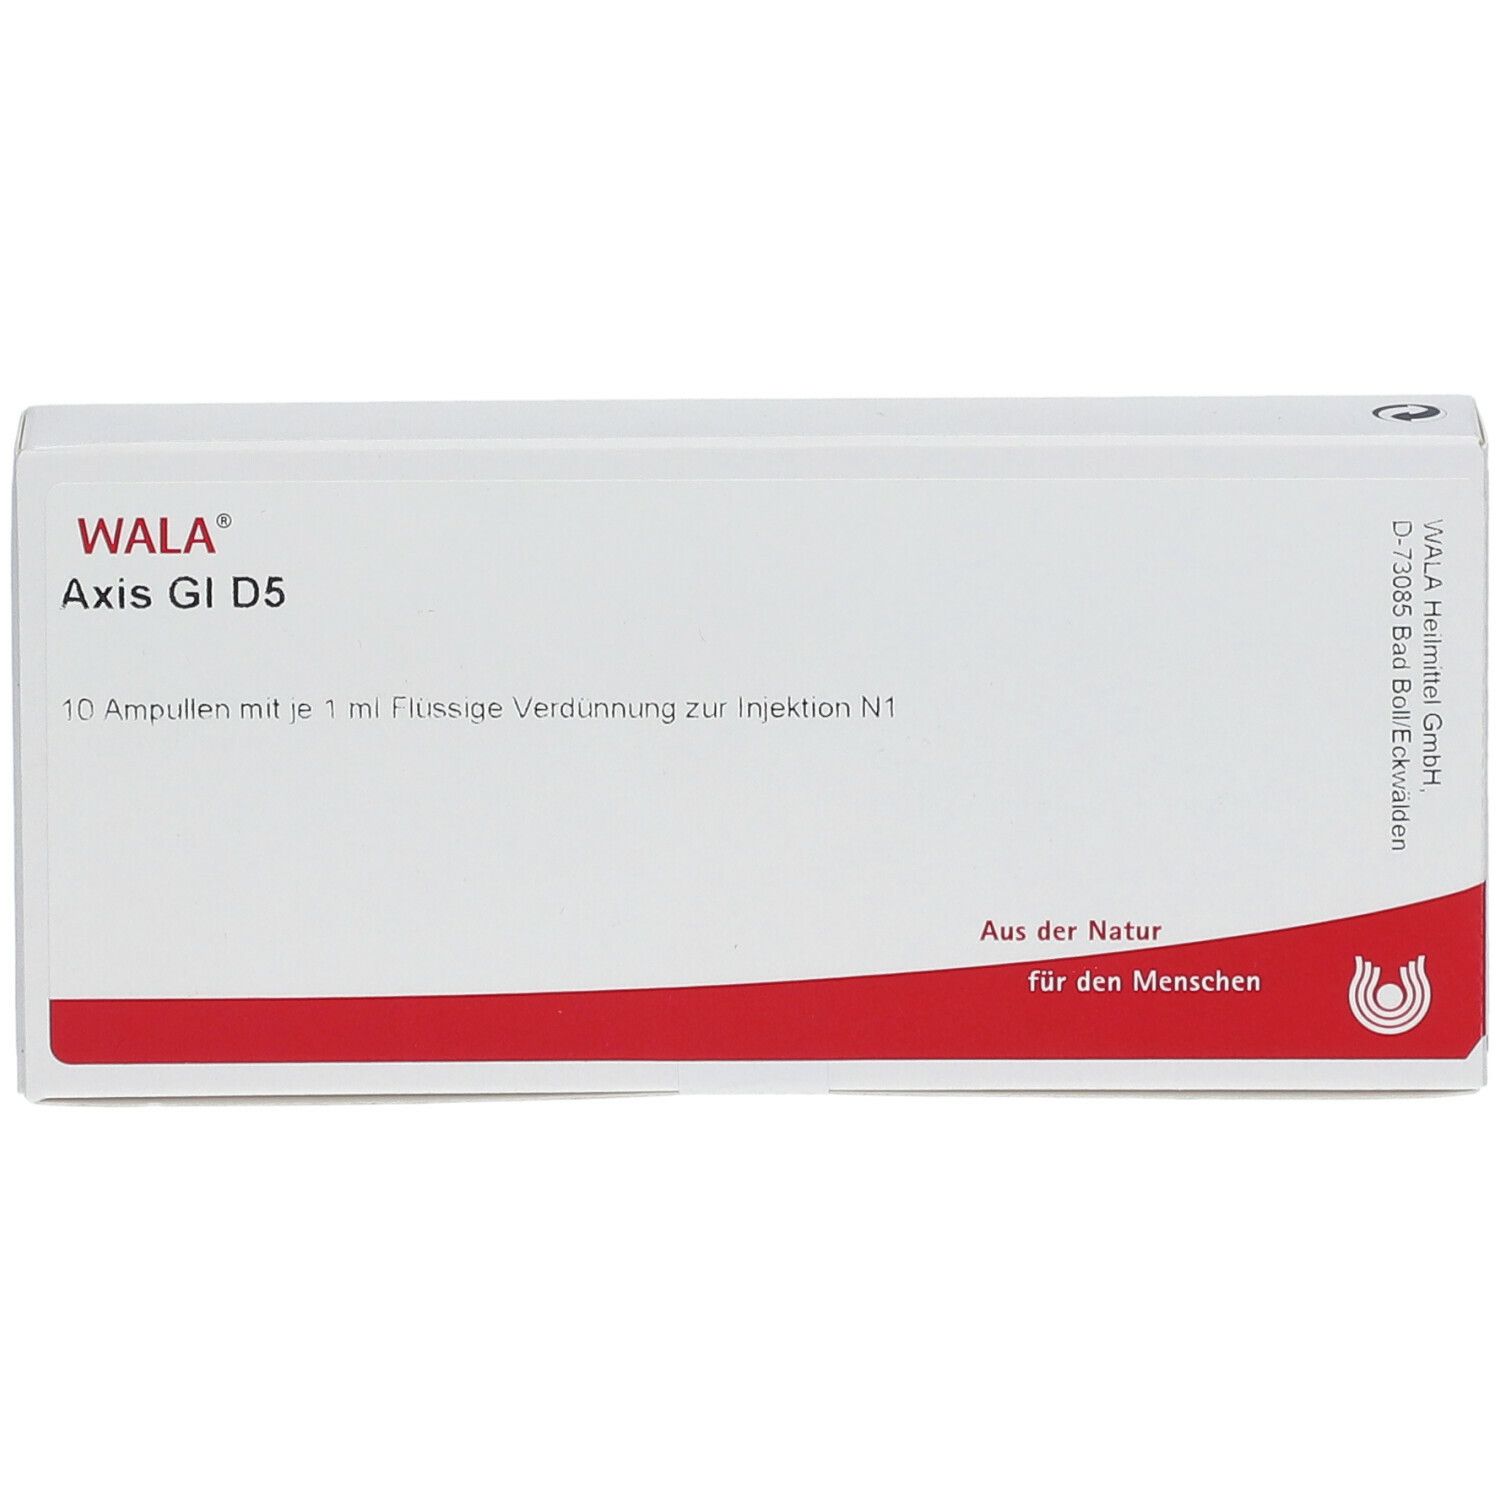 WALA® Axis Gl D 5